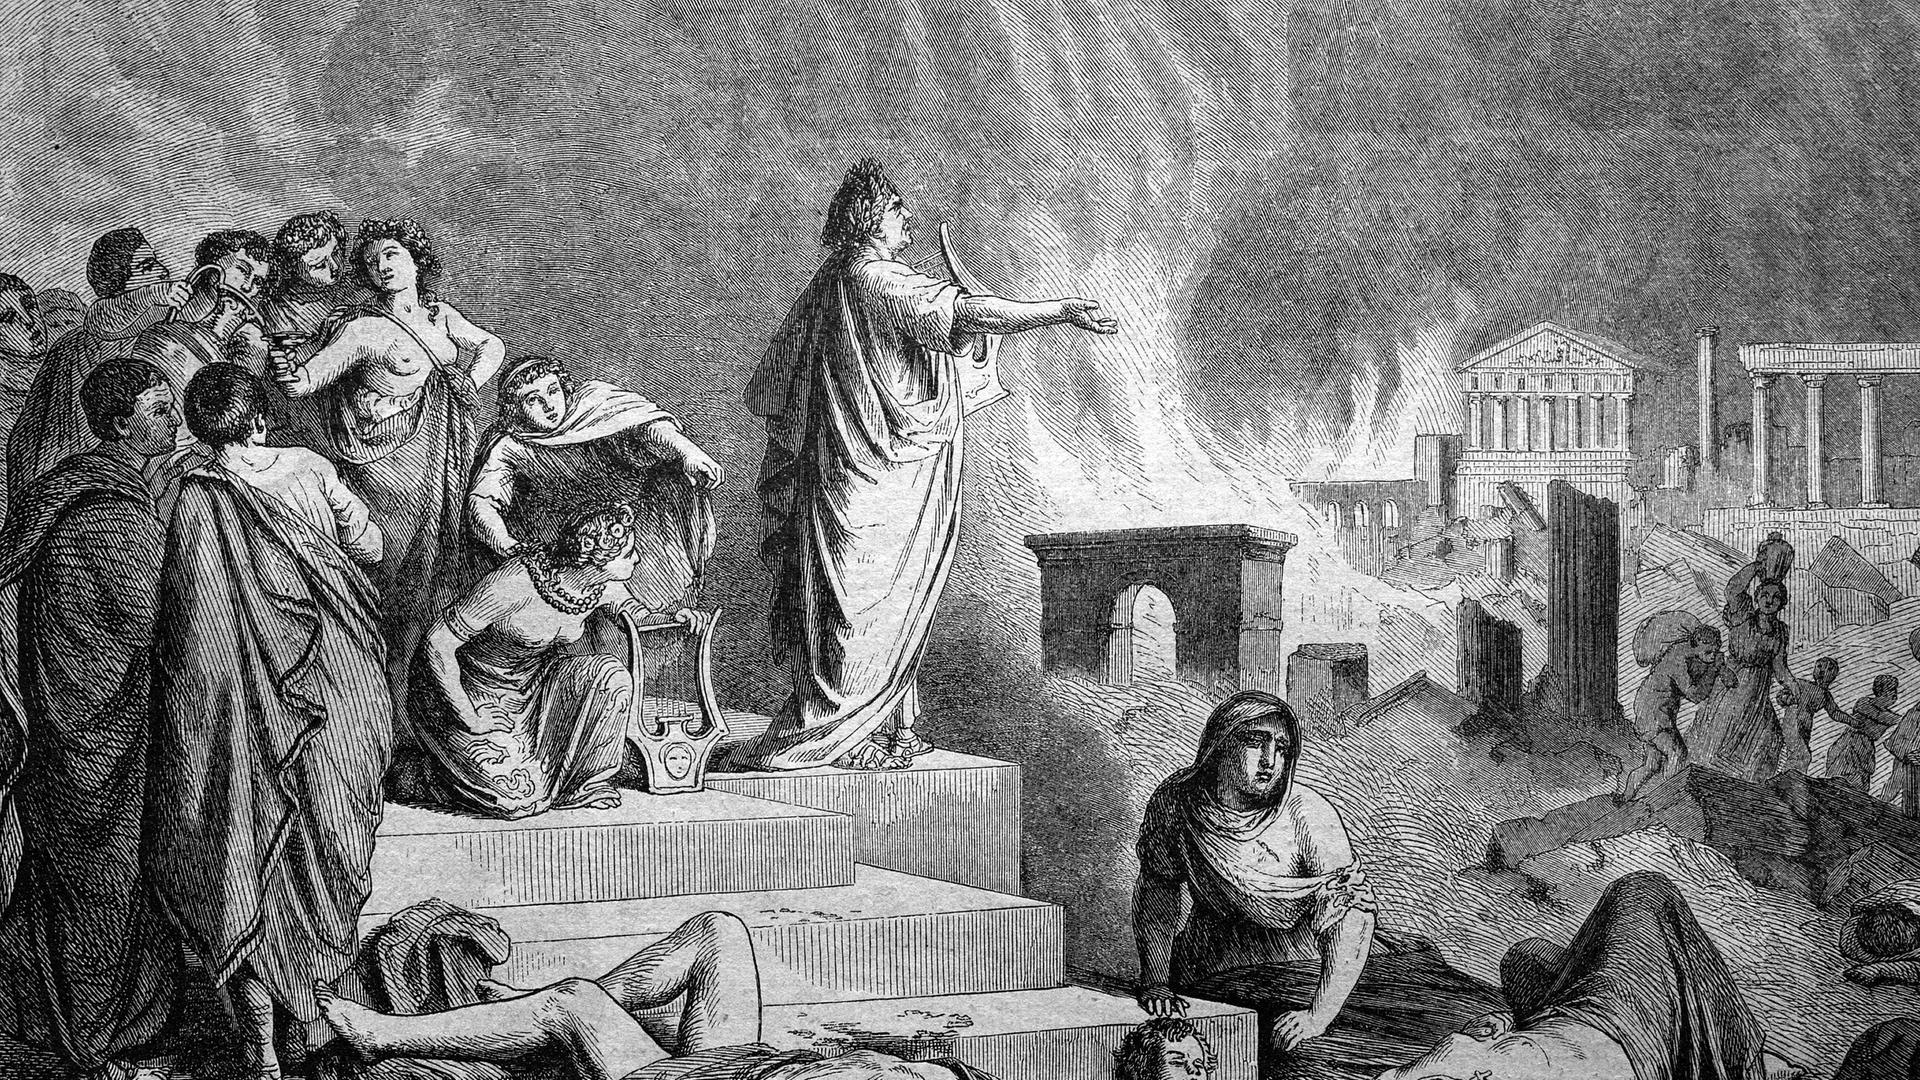 Nero während des Brandes von Rom, abgebildet in einem historischer Stich von 1888